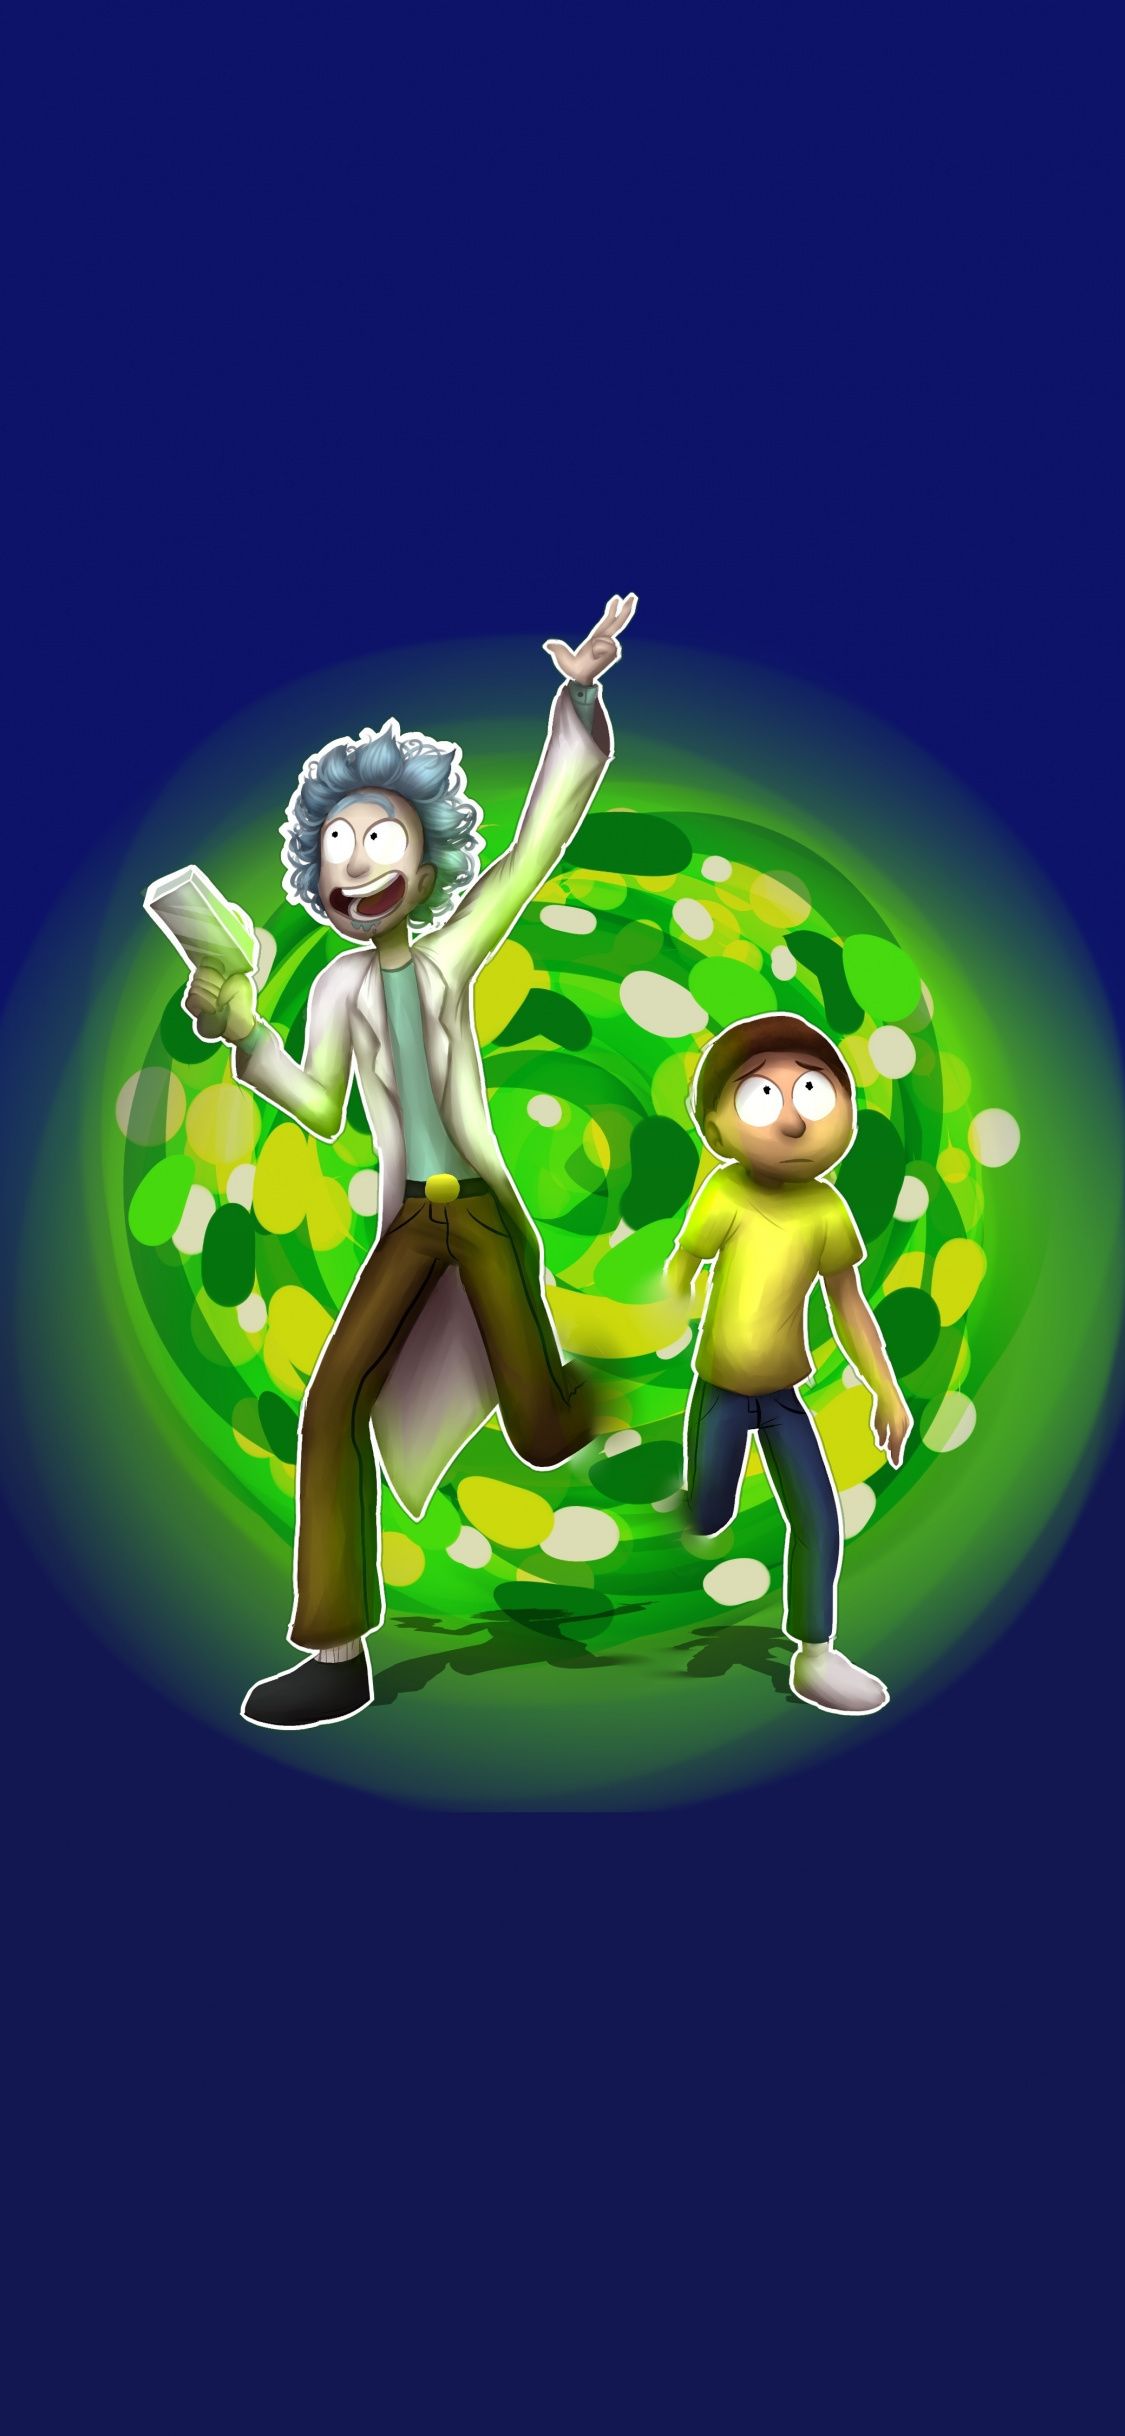 Rick And Morty Portal Wallpaper Hd - HD Wallpaper 